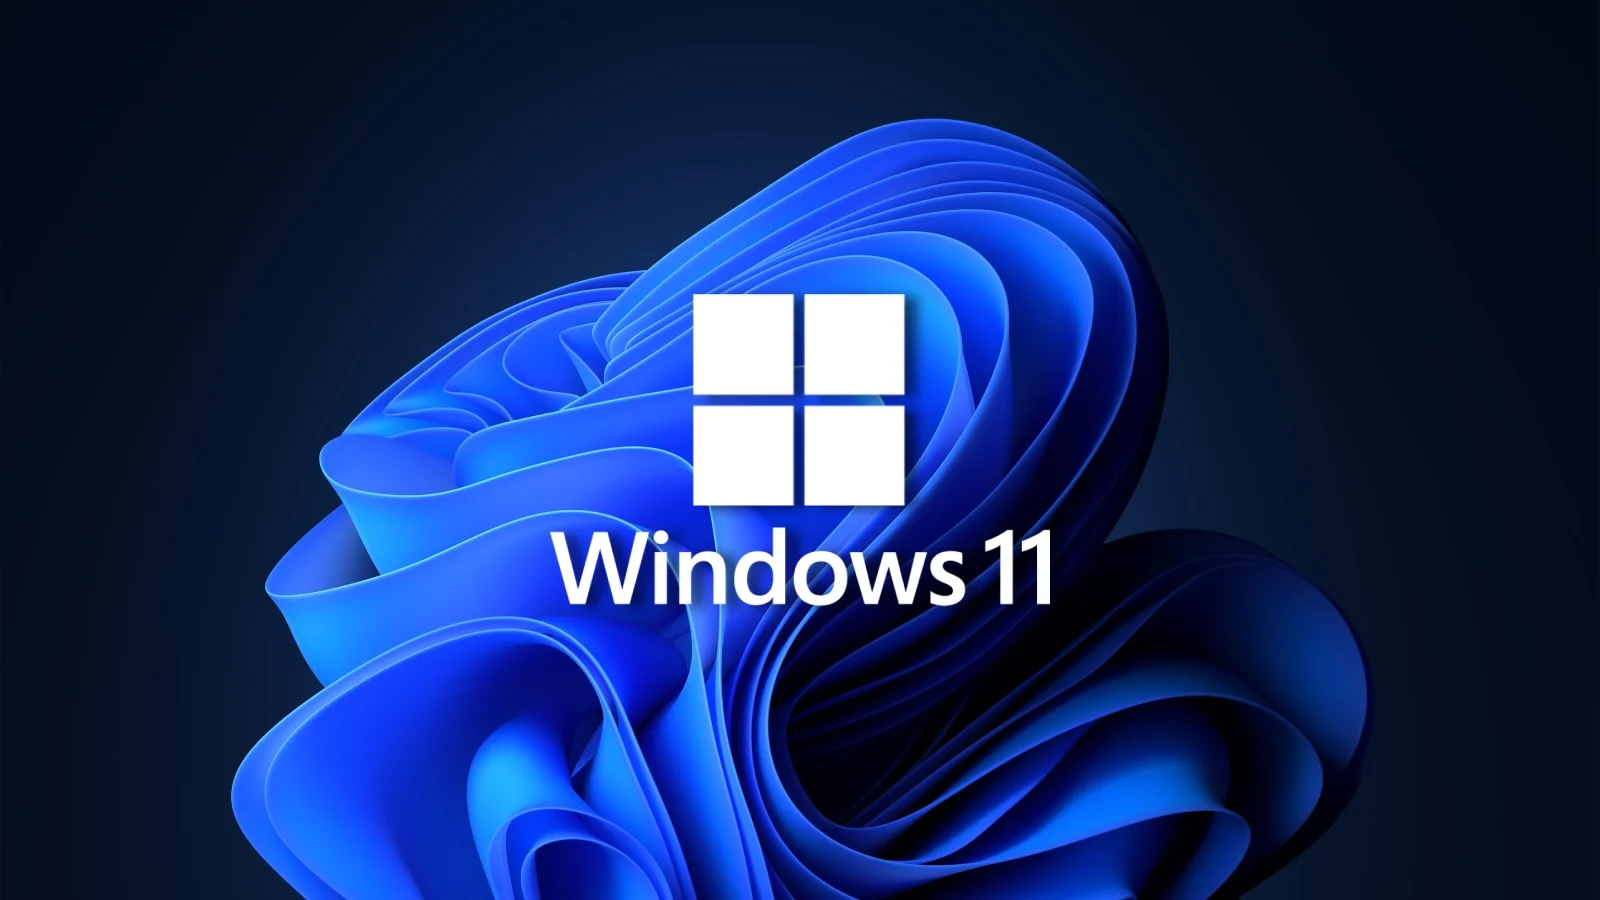 Microsoft: Ukuran Windows 11 Lebih Besar hingga 10% dari Windows 10